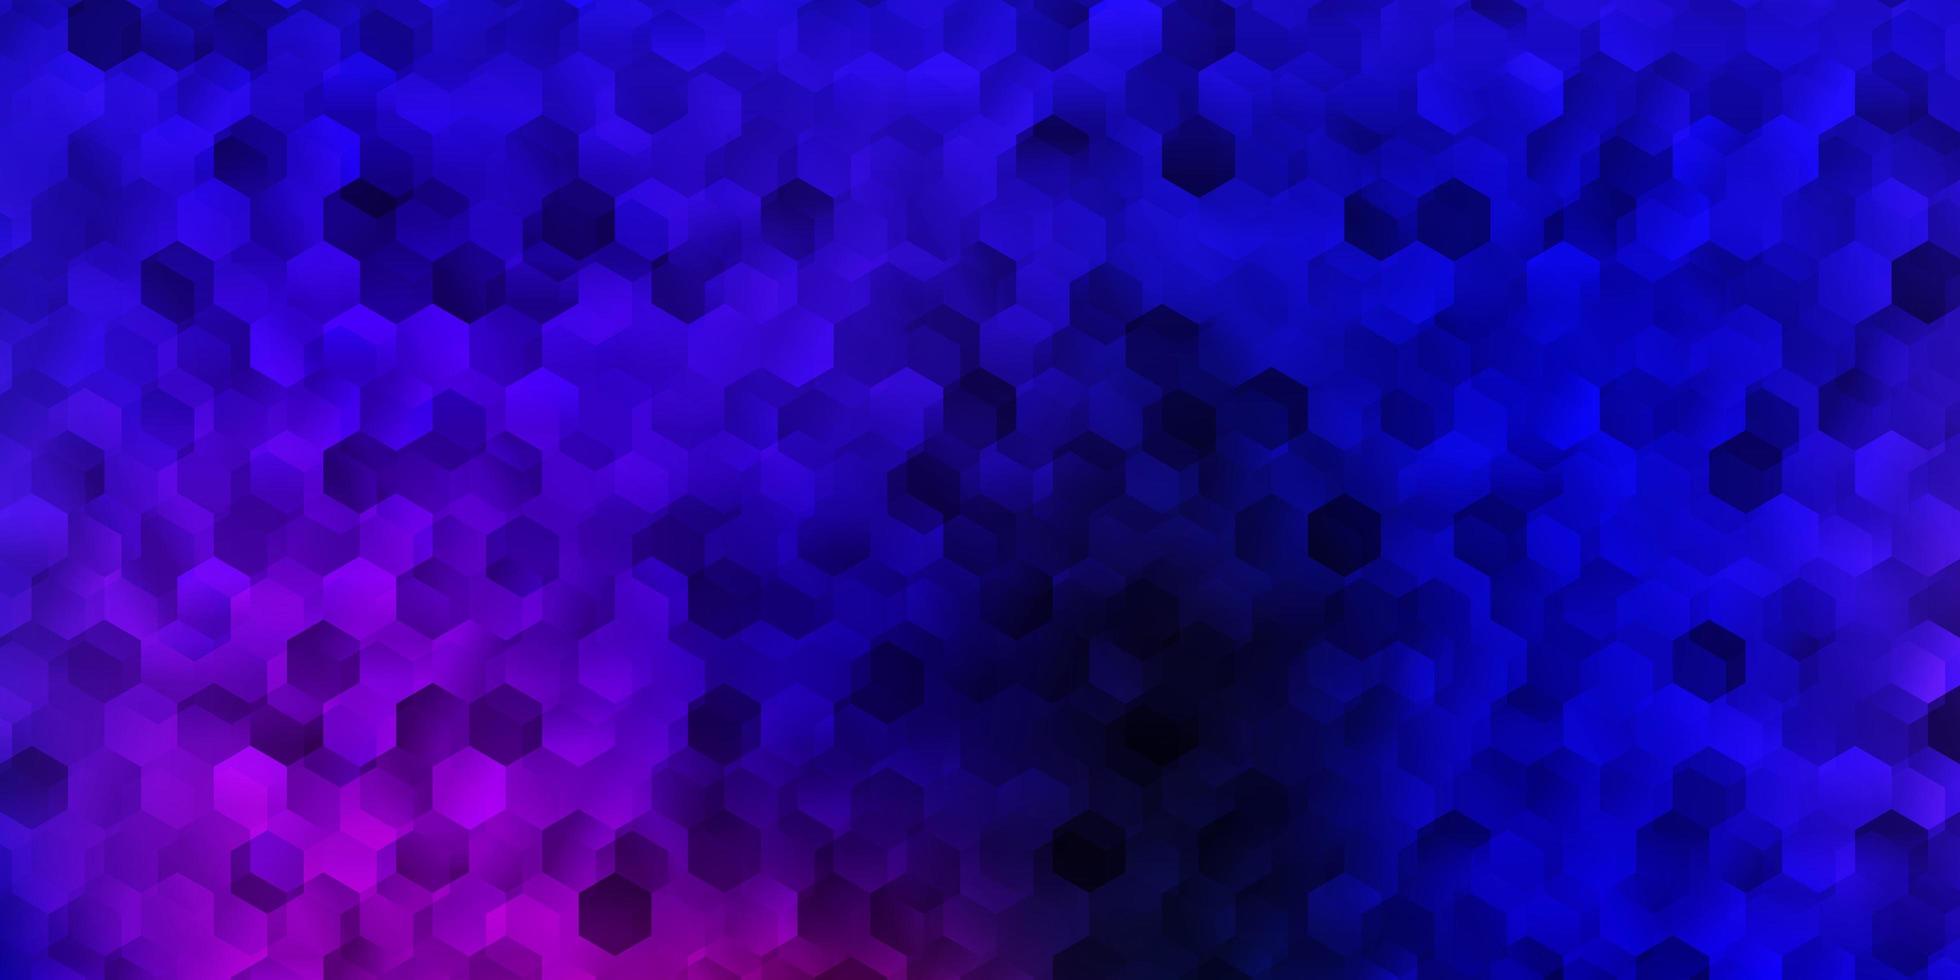 mörkrosa, blått vektormönster med hexagoner. vektor